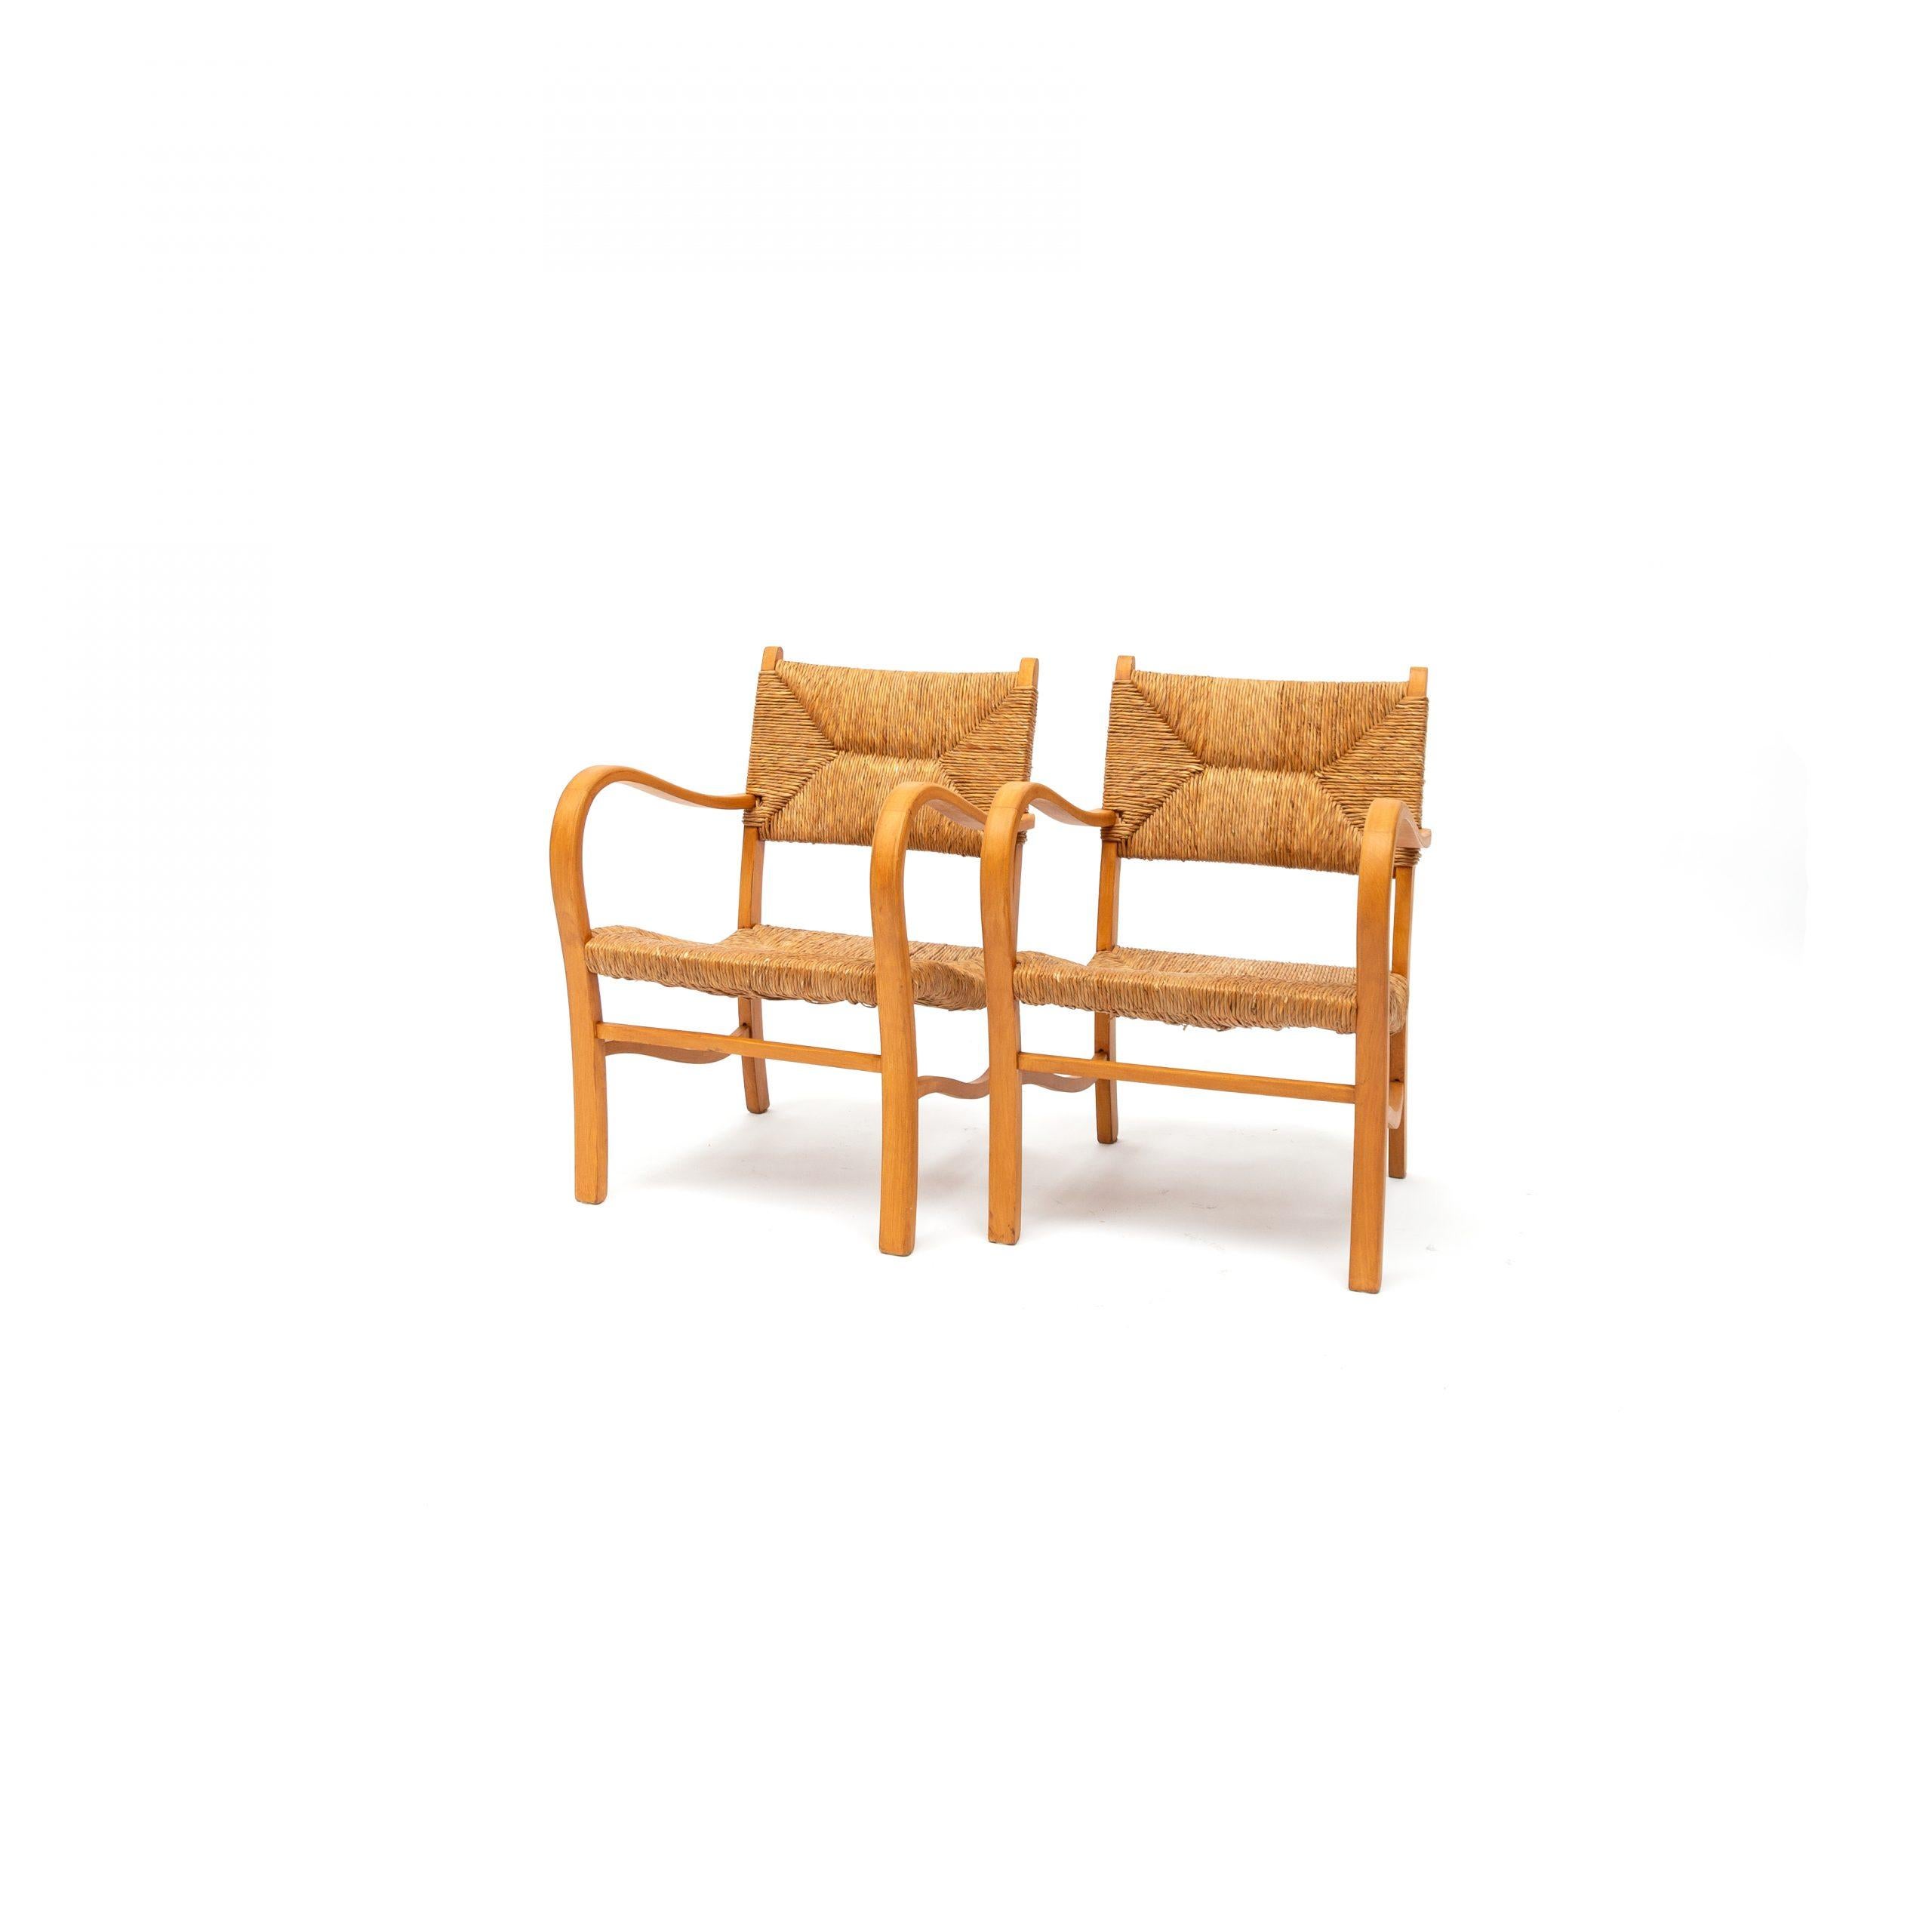 Ces fauteuils ondulés et élégants avec sont exécutés dans un cadre en bois de hêtre courbé. Les courbes douces du cadre, qui se répètent dans les accoudoirs, donnent à cet ensemble un aspect très sculptural.

Fauteuil scandinave en bois de hêtre,